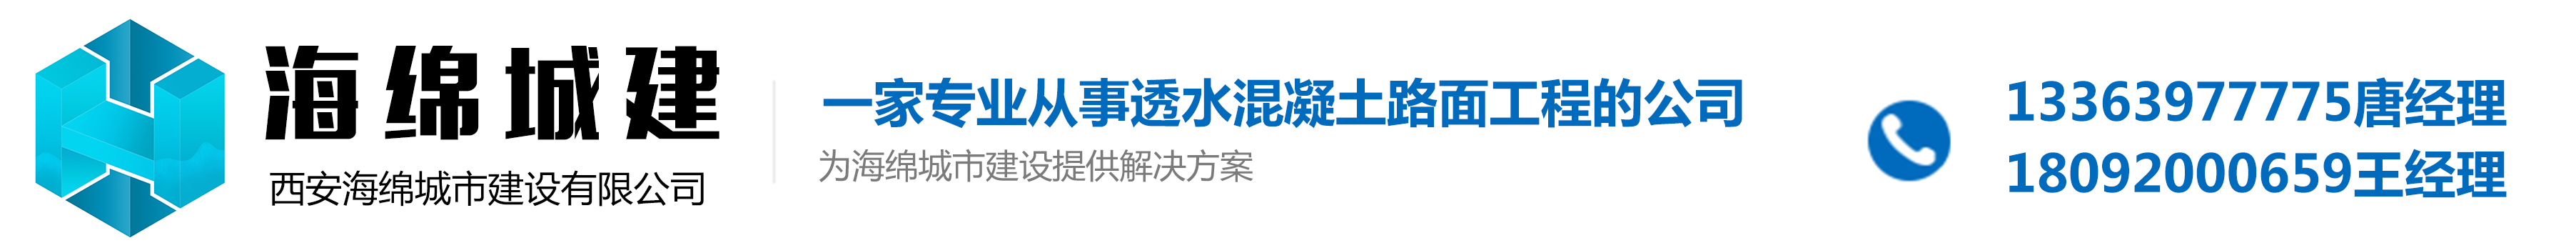 西安海綿城市建設公司_logo